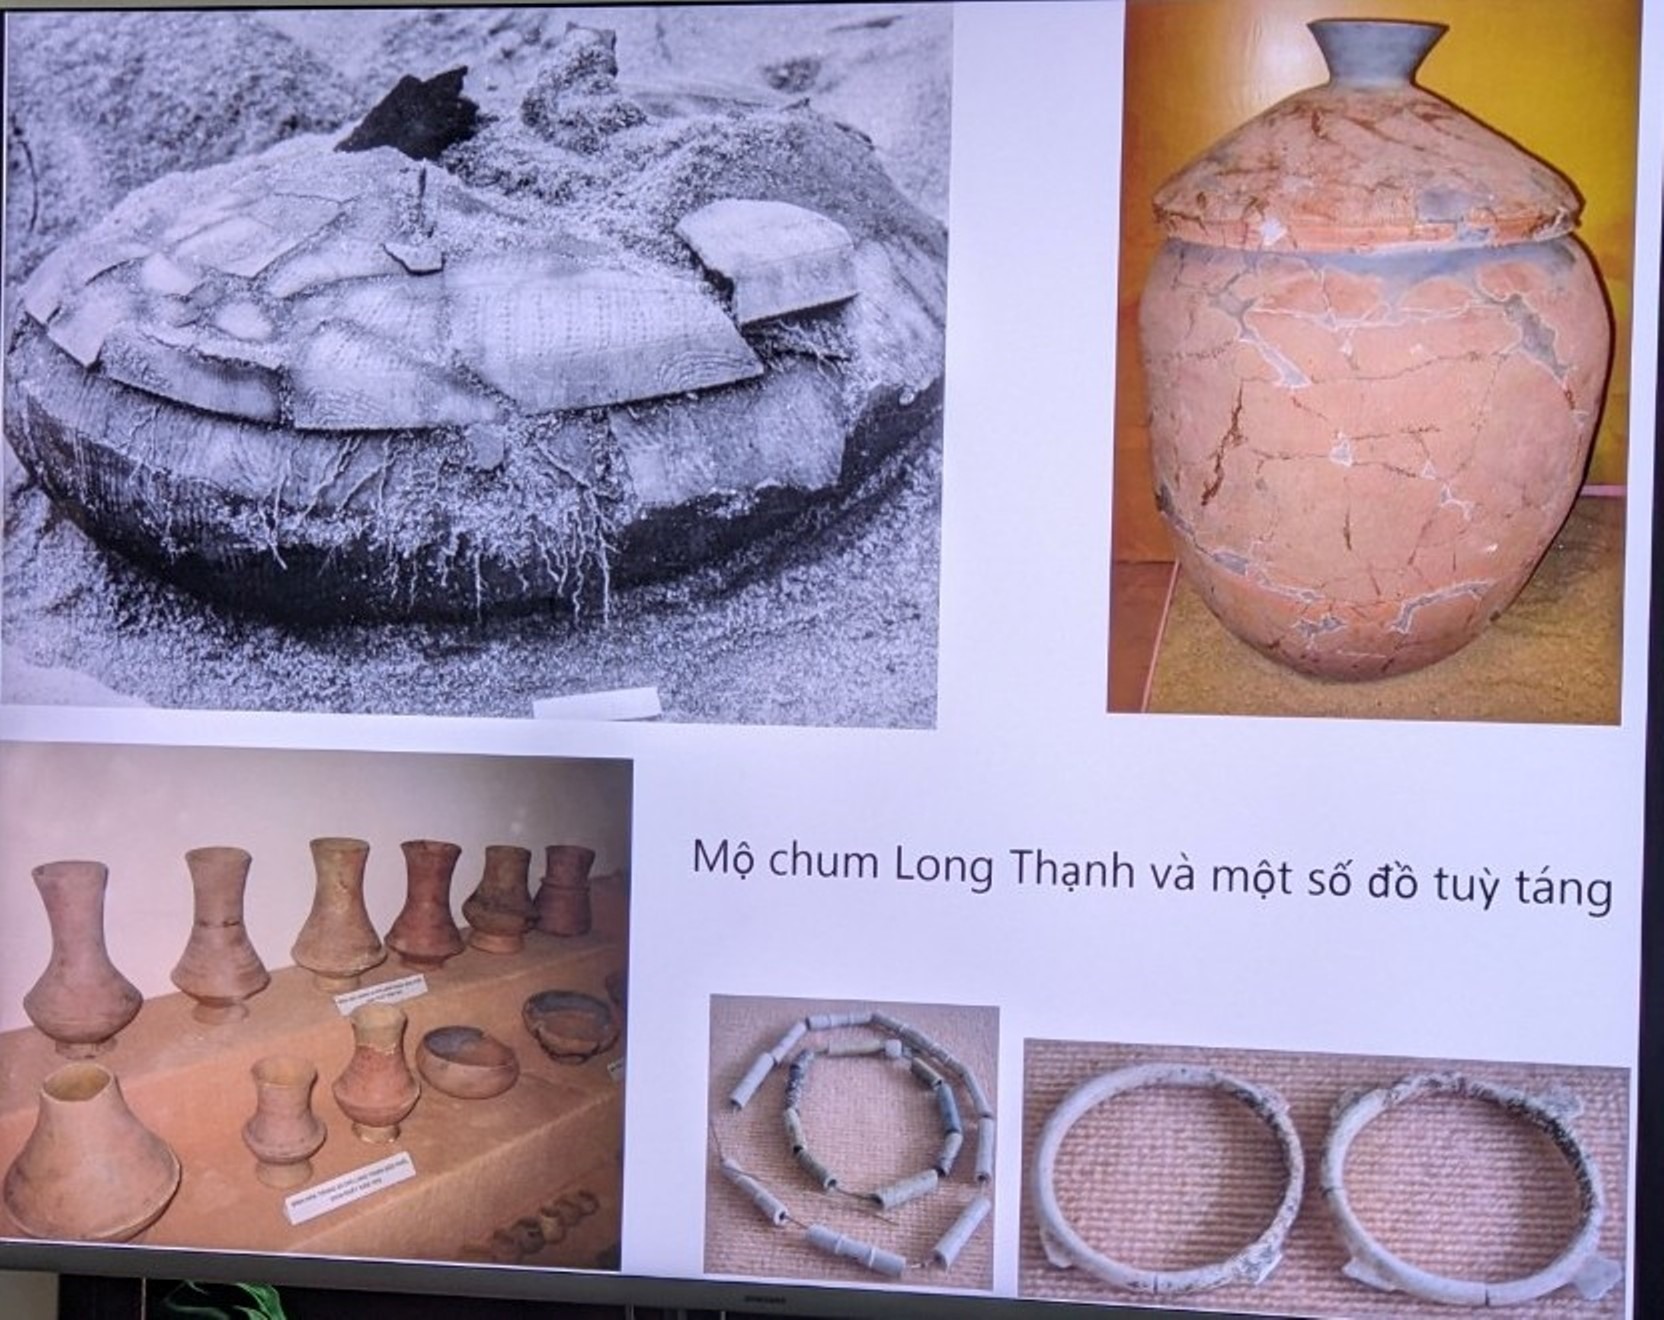 Mộ chum Long Thạnh và một số đồ dùng tùy táng được khai quật tại di tích Văn hóa Sa Huỳnh. Ảnh: Ngọc Viên